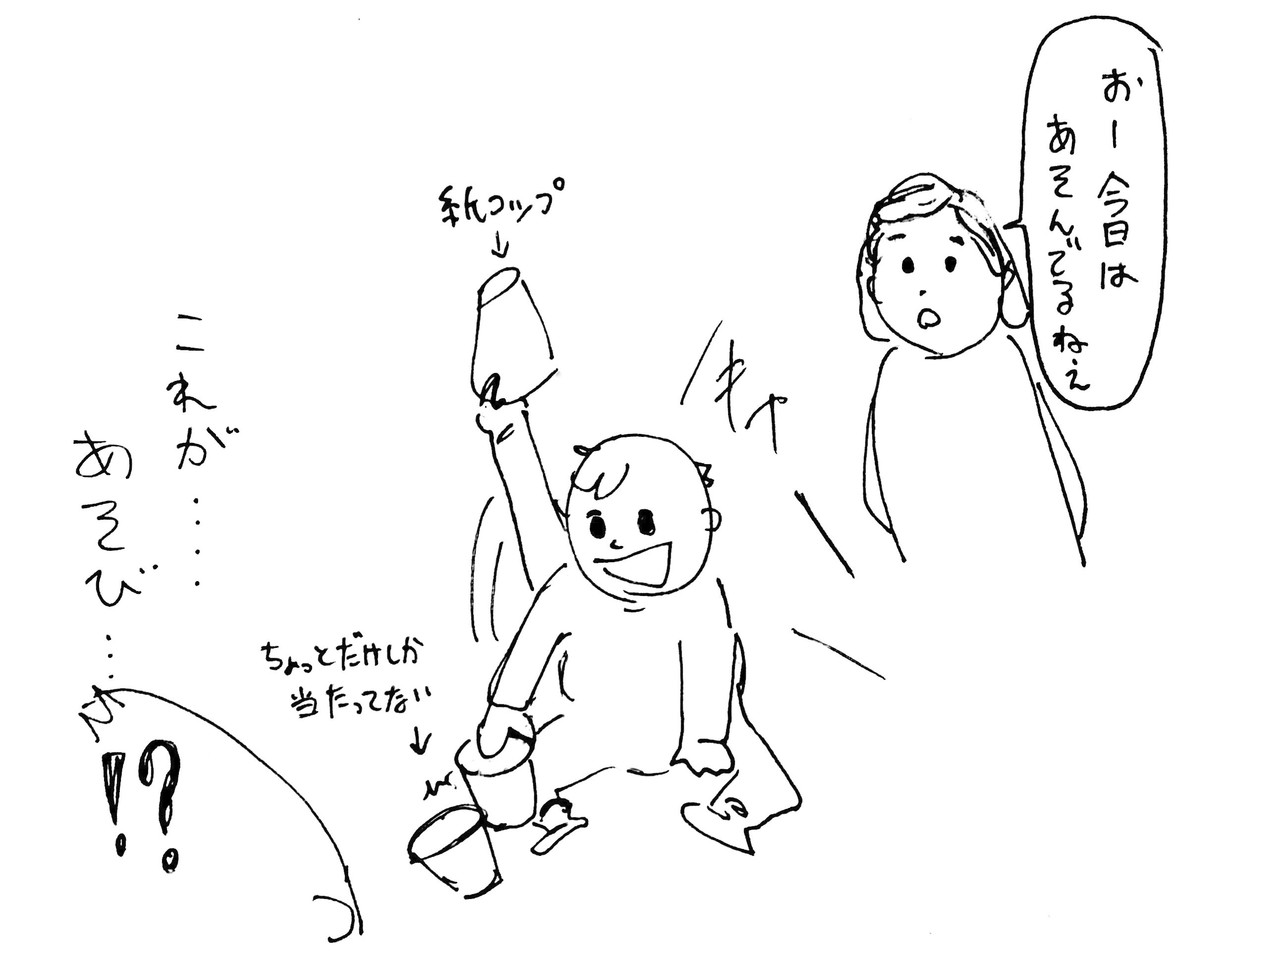 赤ちゃんは遊びのなかで何を楽しんでいるのか 観察編 臼井 隆志 ワークショップデザイン Note